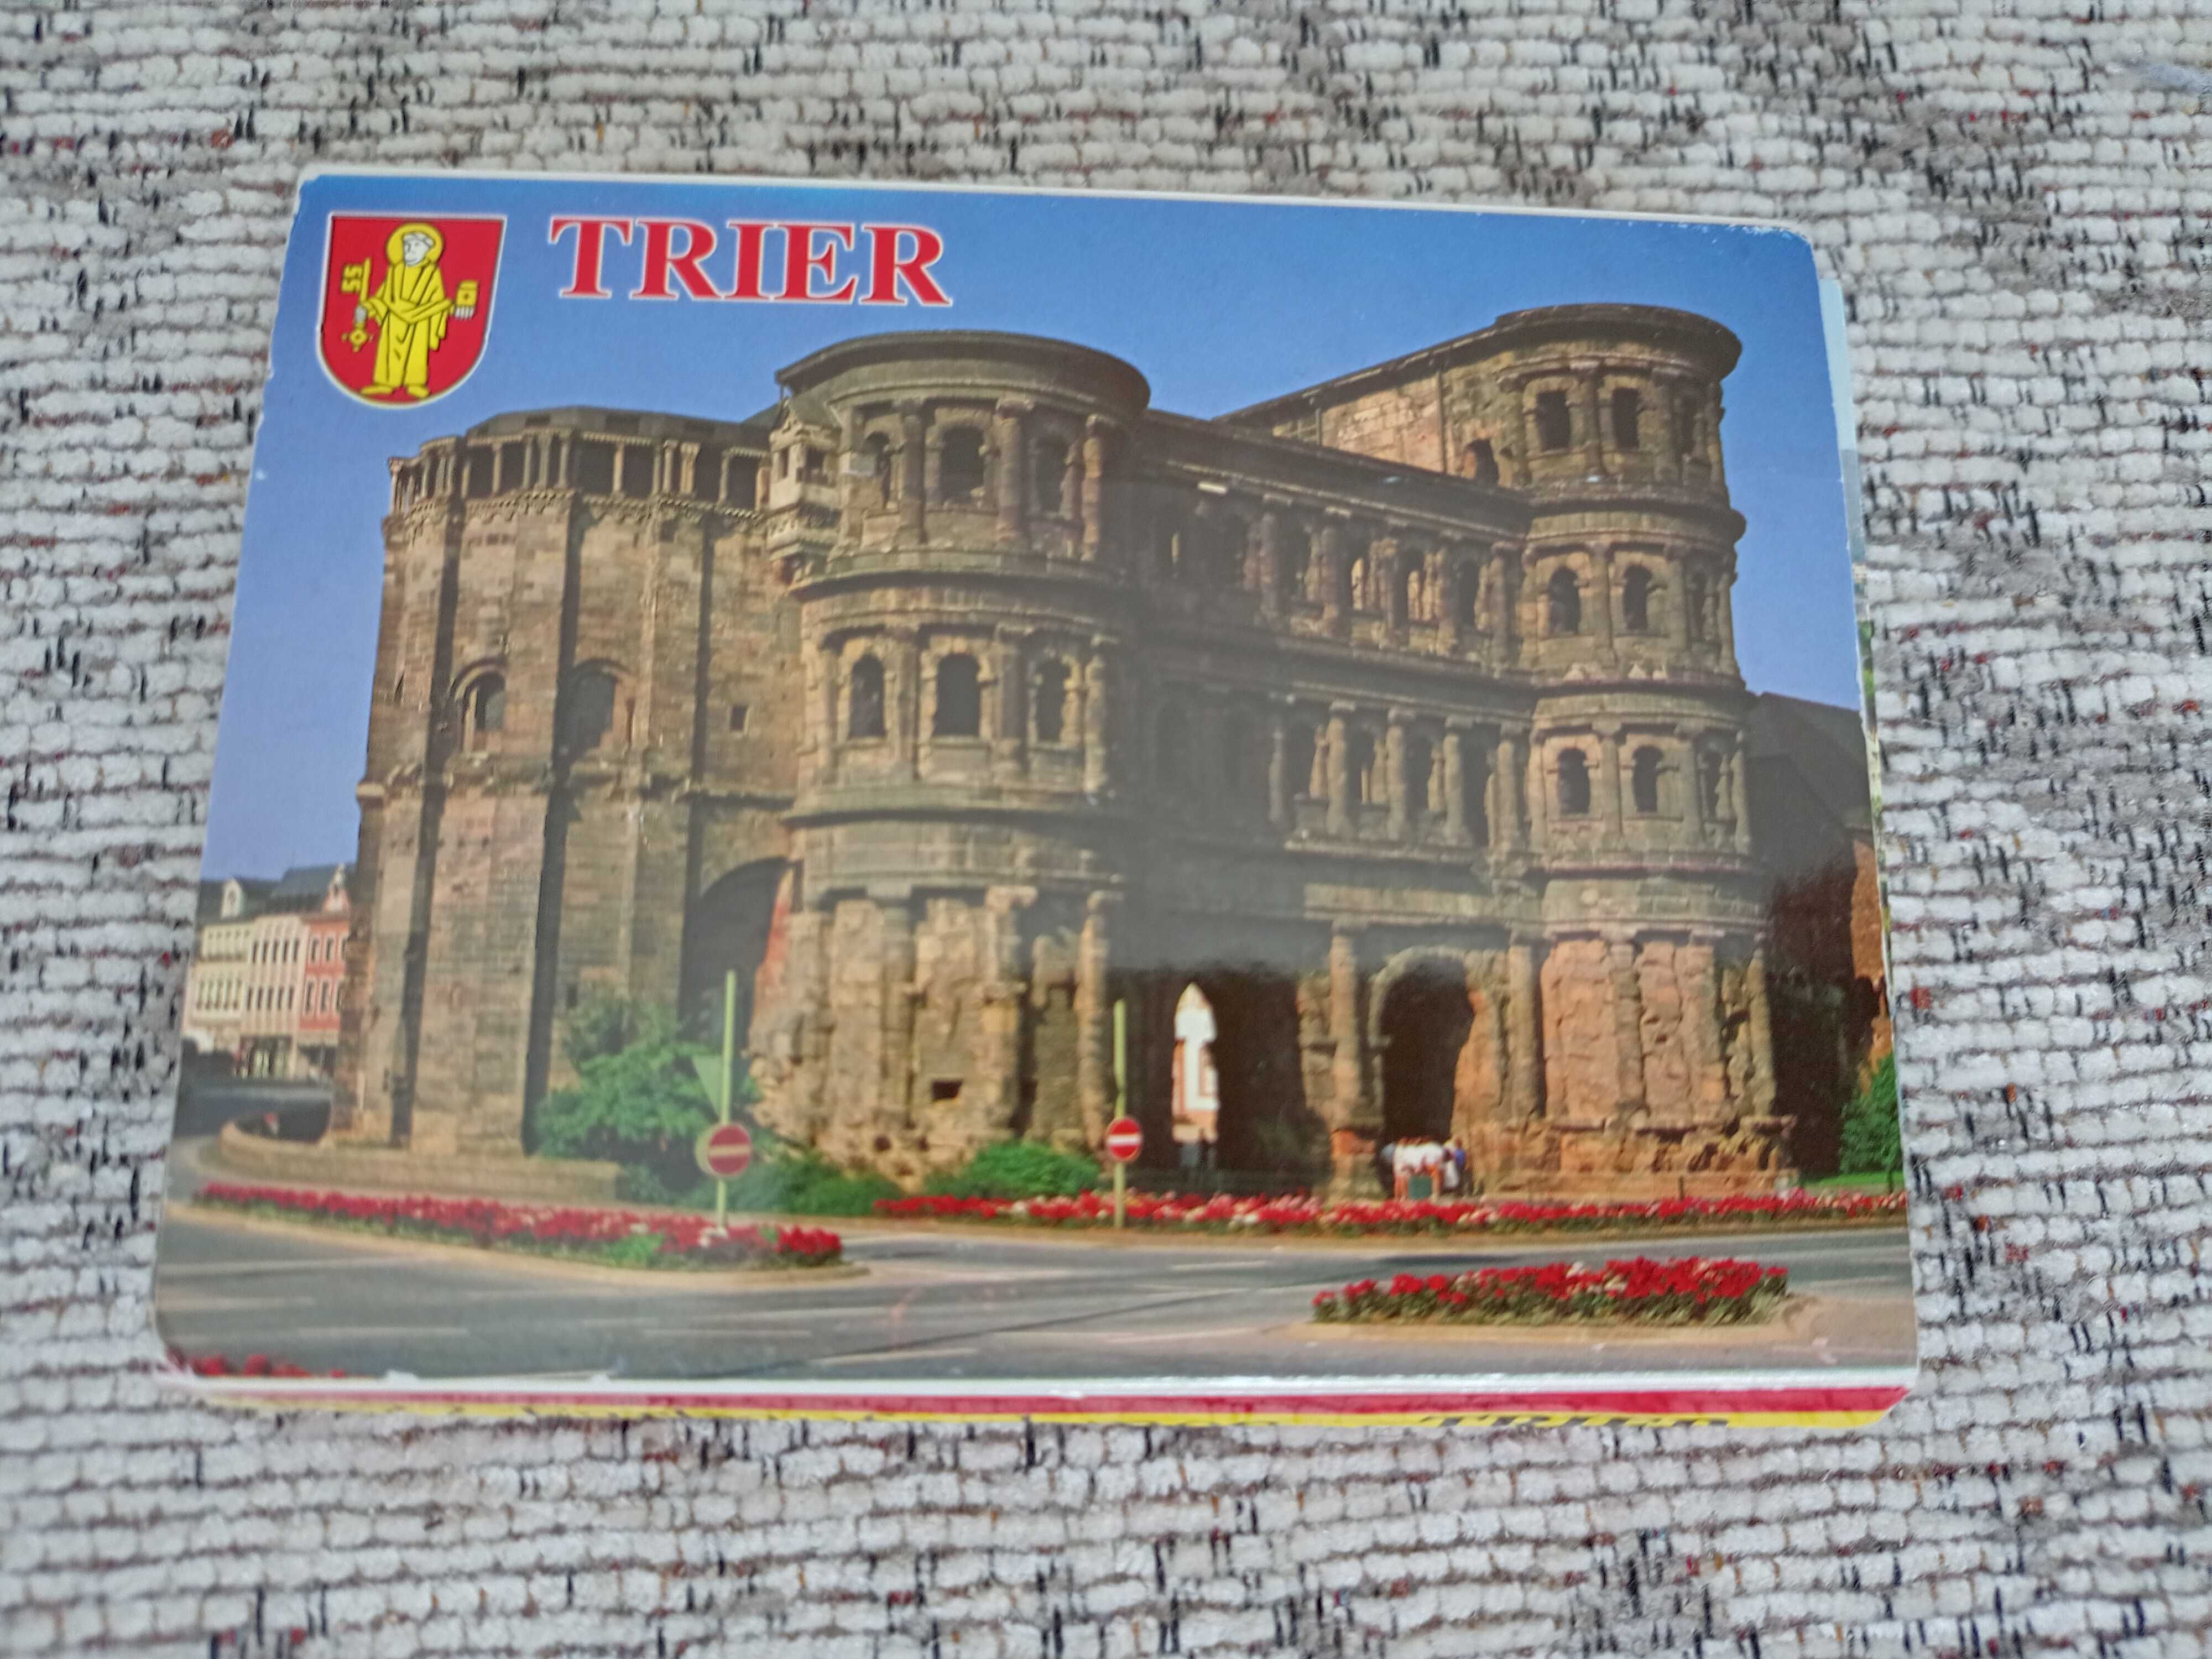 карточки/открытки немецкой архитектуры с переводом на разные языки